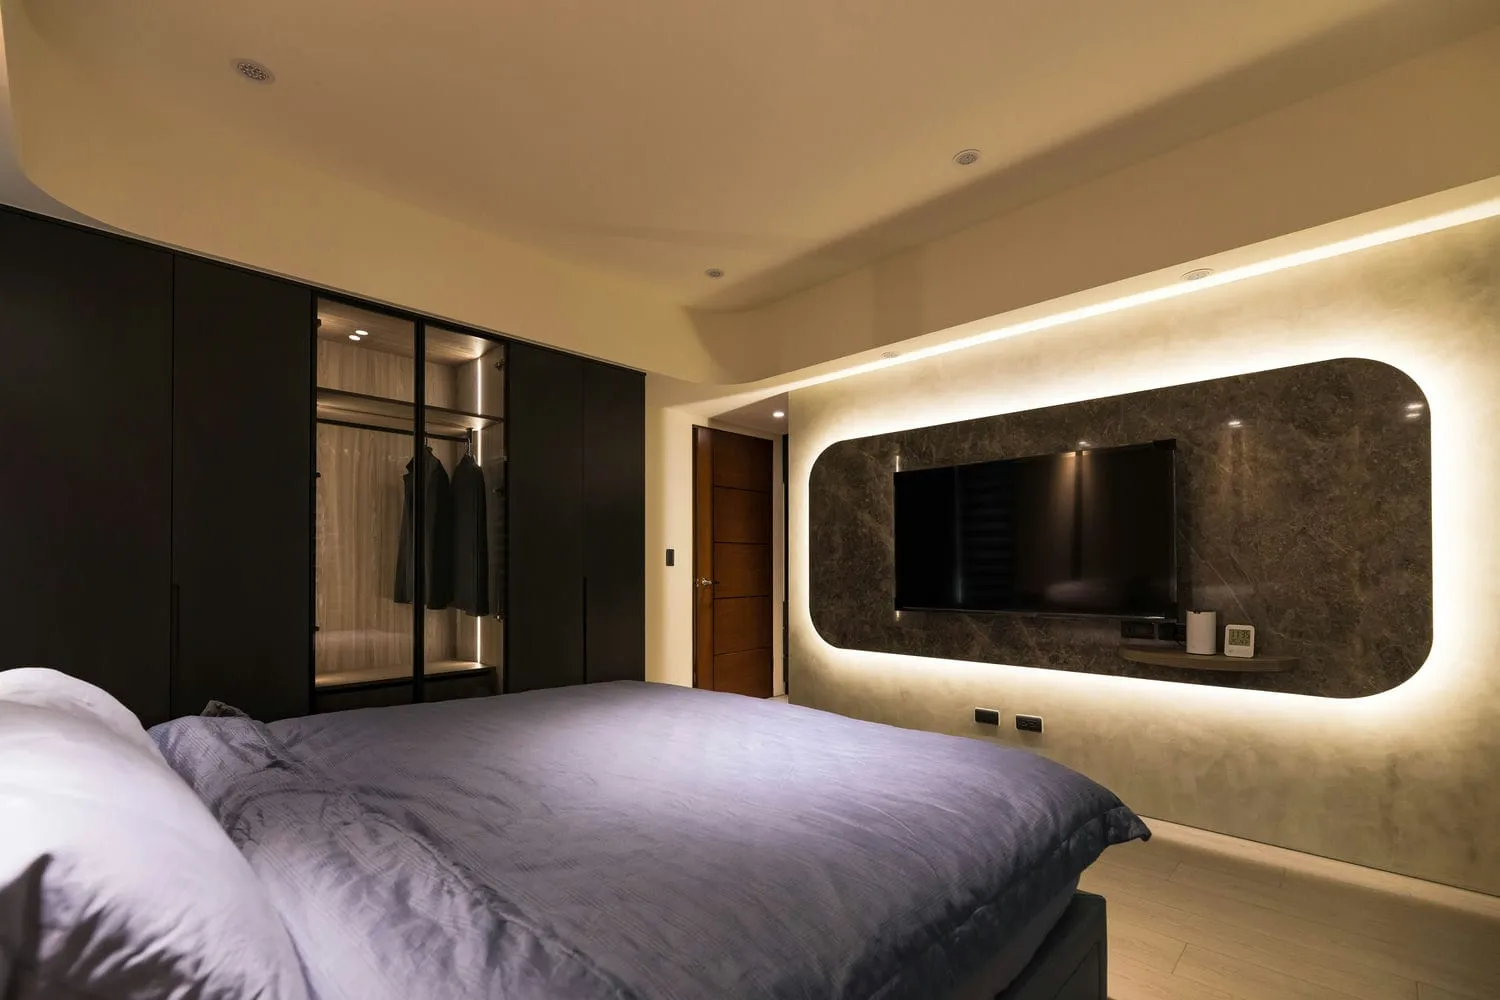 台中太平區住宅空間 臥室靜謐 舒適安眠 3